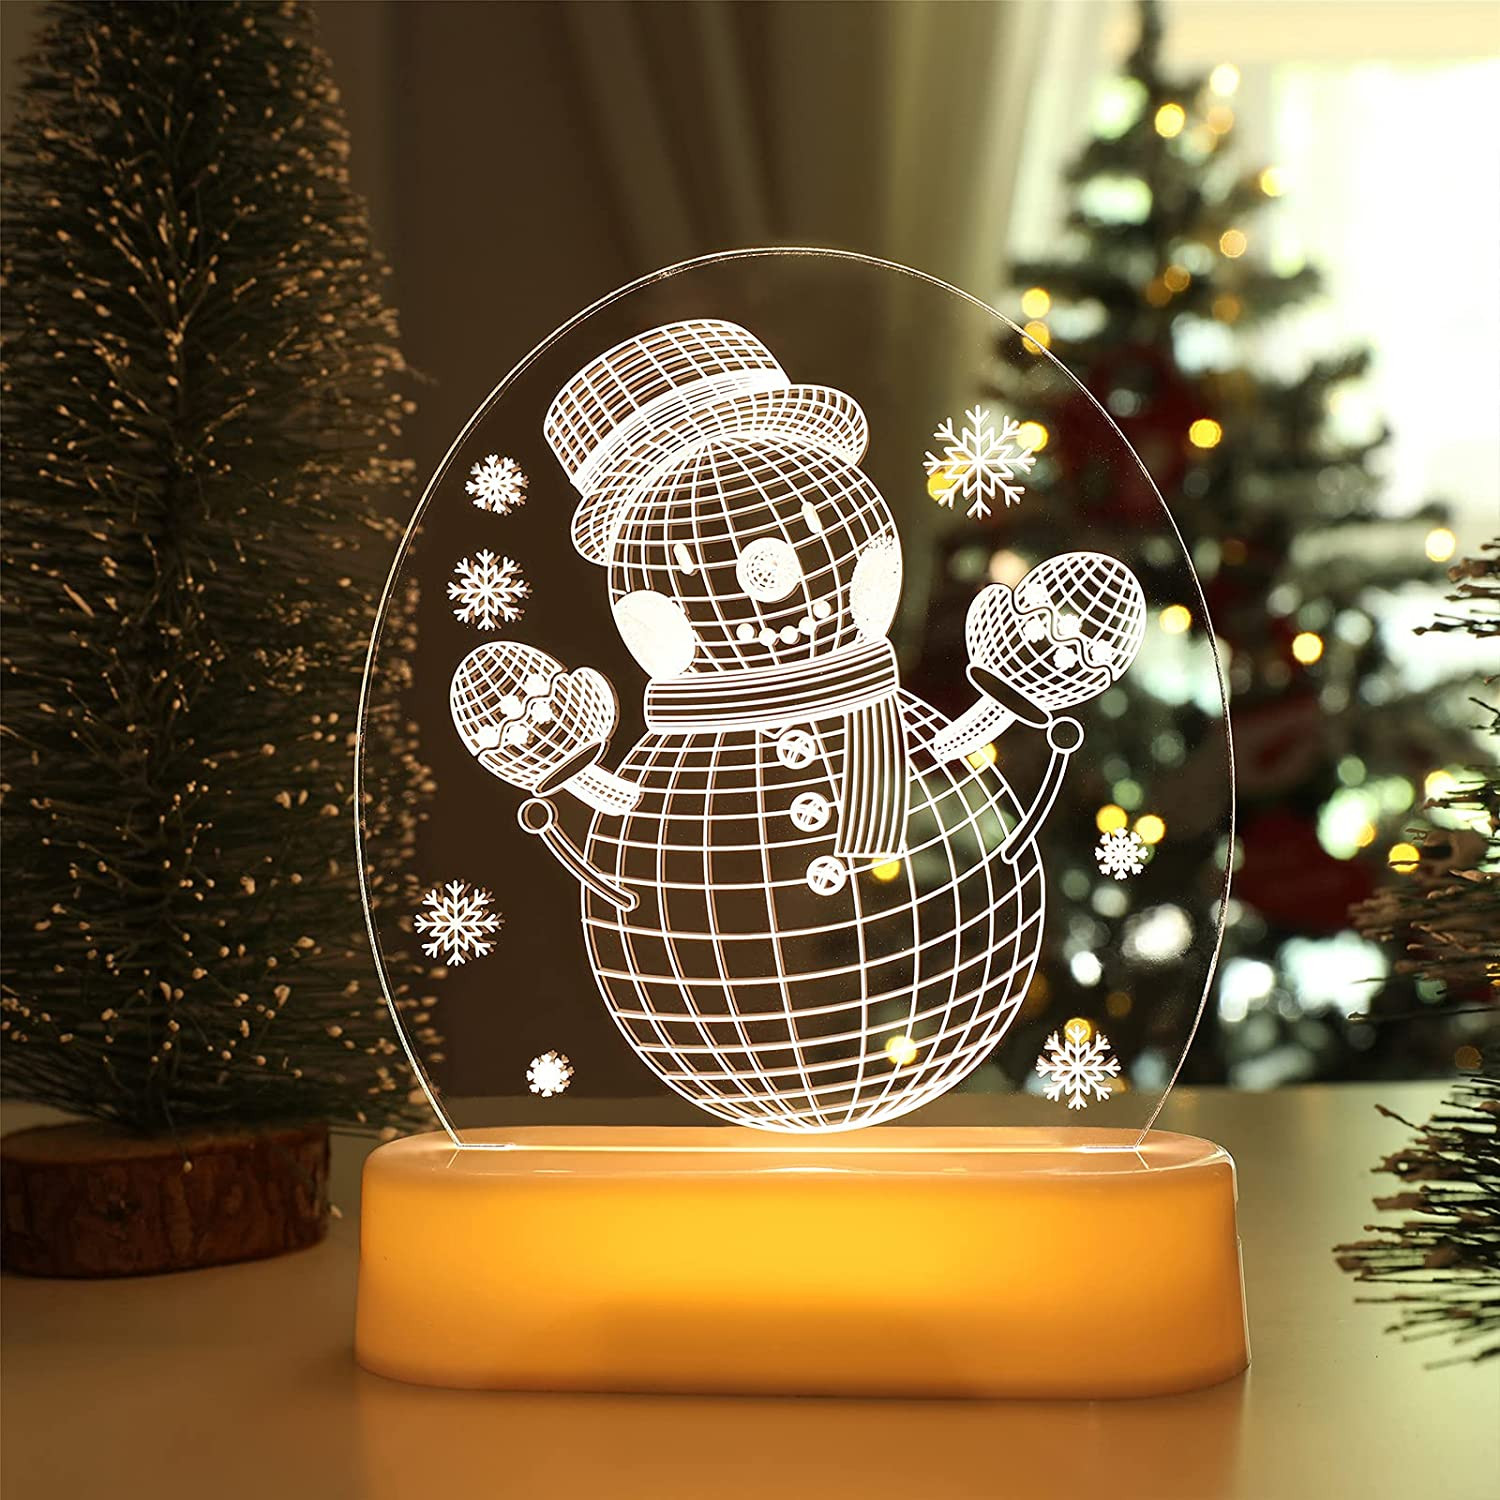 Todo el tiempo Precioso idioma Luces de Navidad Decoración, BLOOMWIN LED Luz de Noche Blanco Cálido  Iluminación Lámpara de Noche para Navidad, Regalo para Niños